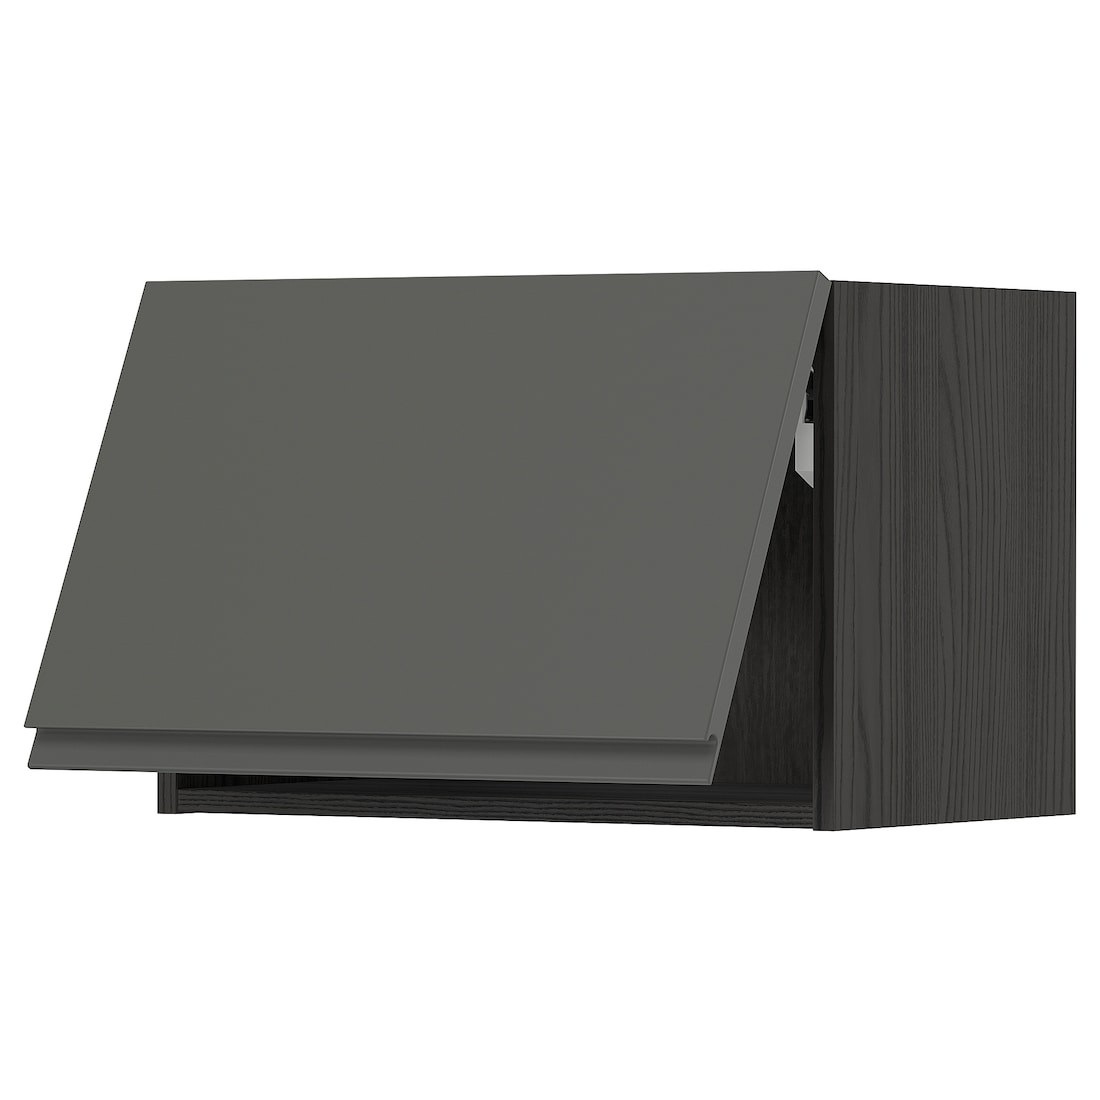 METOD МЕТОД Навесной горизонтальный шкаф, черный / Voxtorp темно-серый, 60x40 см